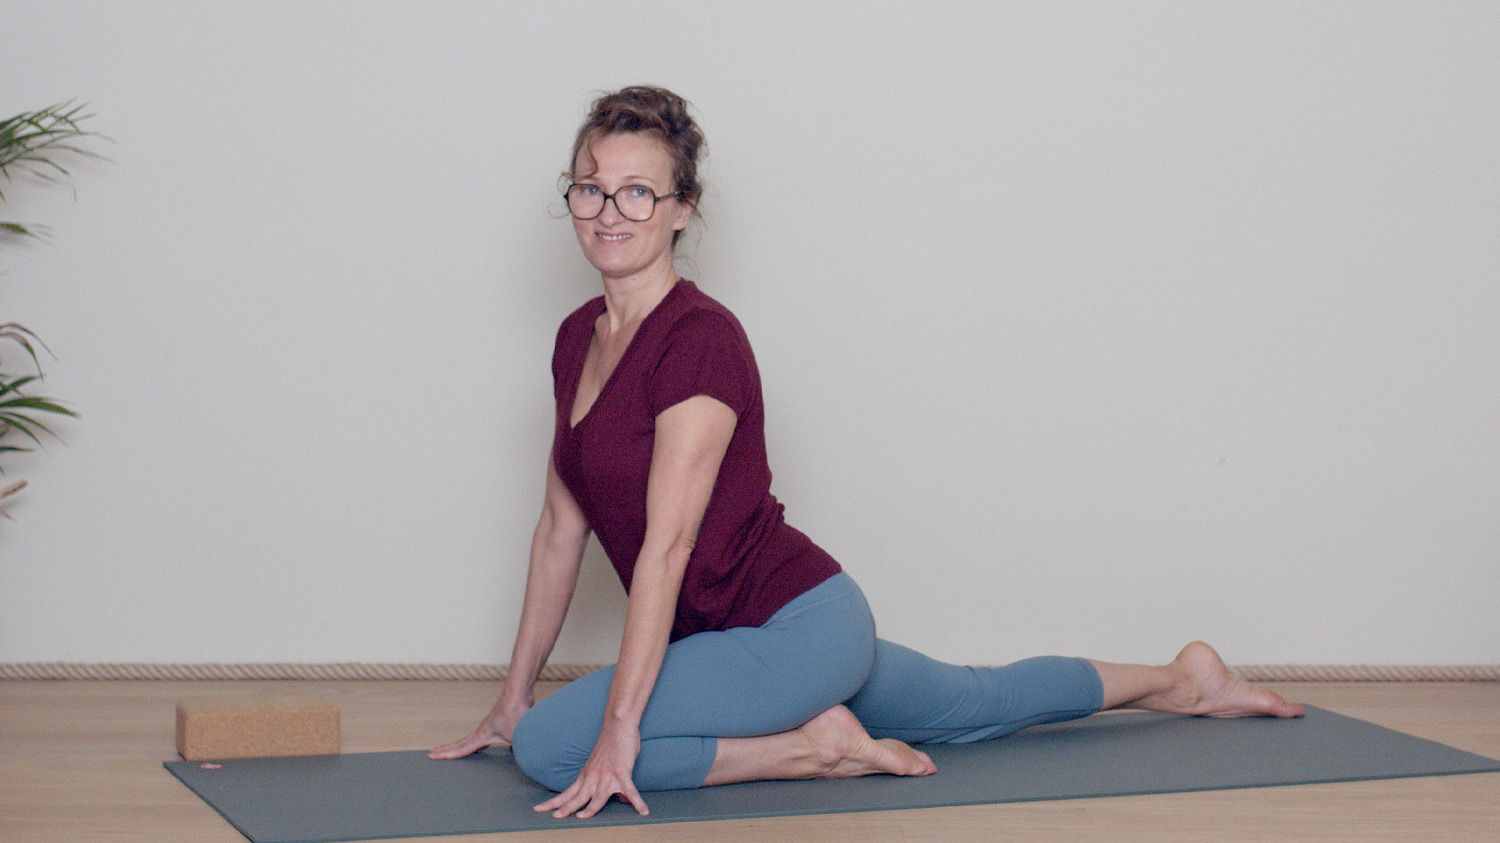 Spécial dos : relâcher les psoas | Cours de yoga en ligne avec Delphine Denis | Hatha Yoga dynamique